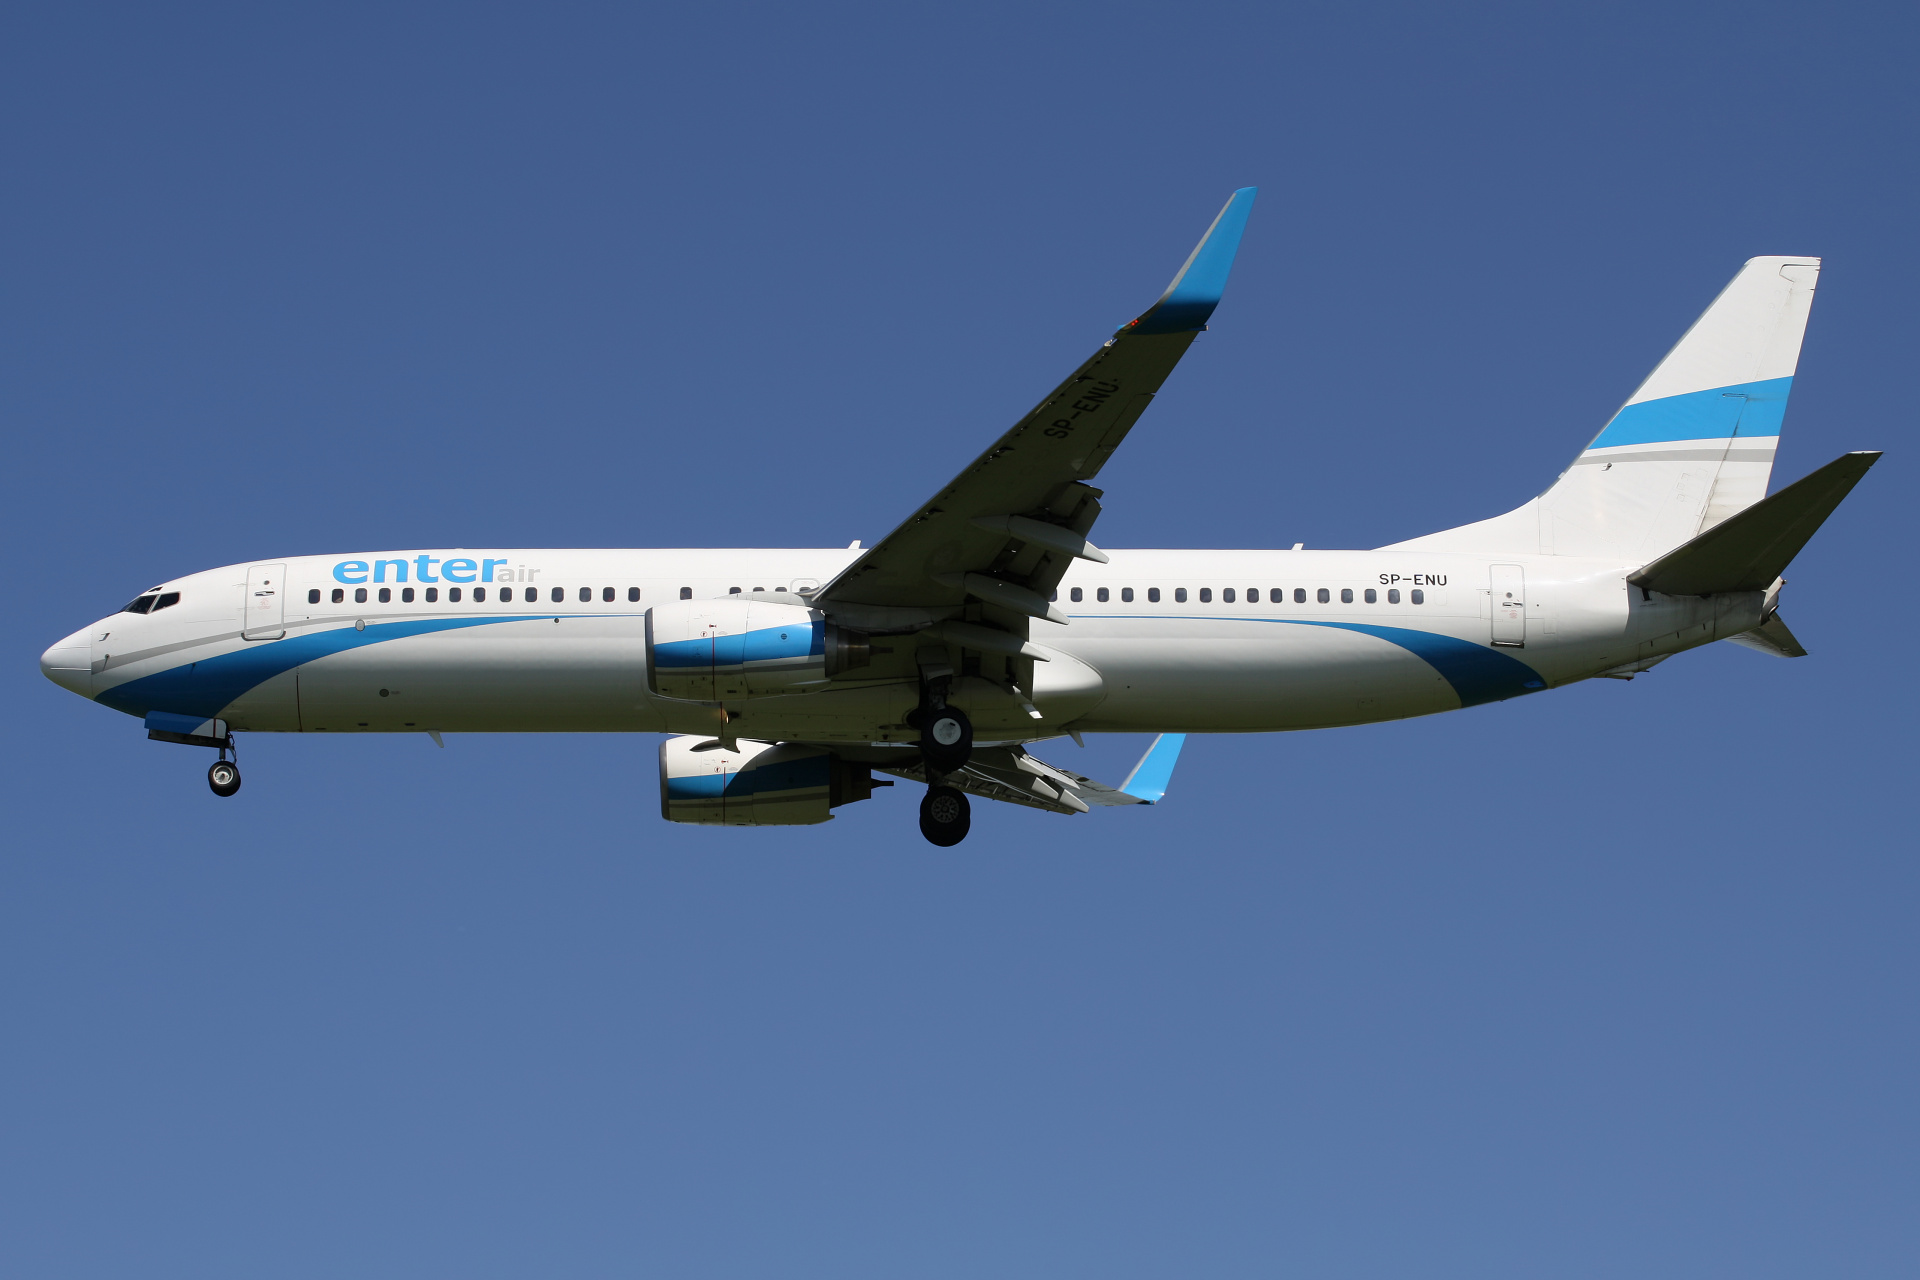 SP-ENU (Aircraft » EPWA Spotting » Boeing 737-800 » Enter Air)